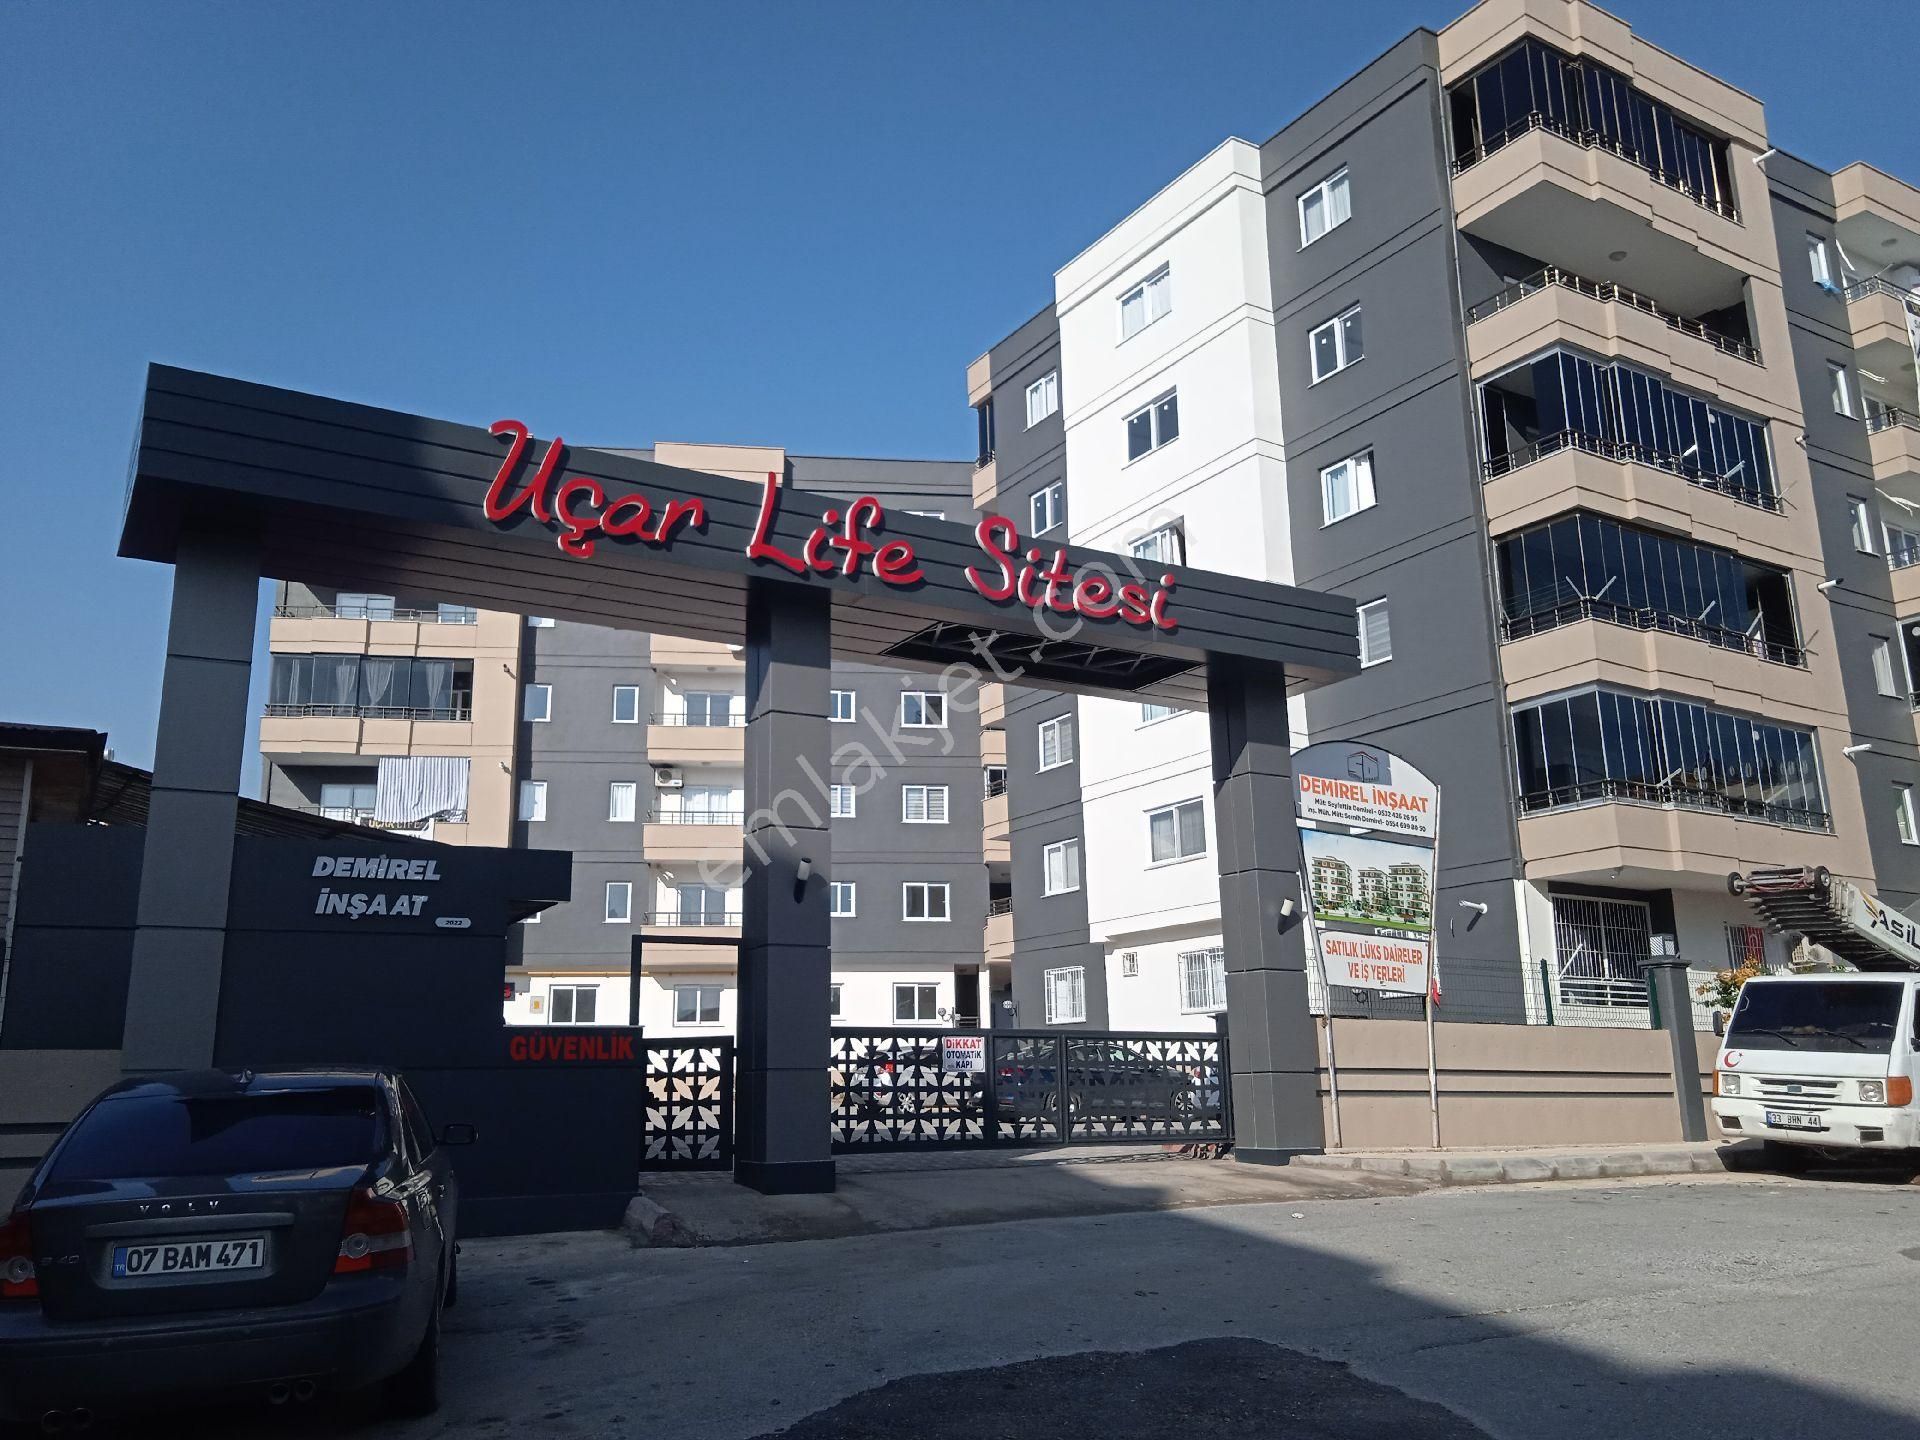 Tarsus Ergenekon Satılık Daire site içerisinde sıfır daireler